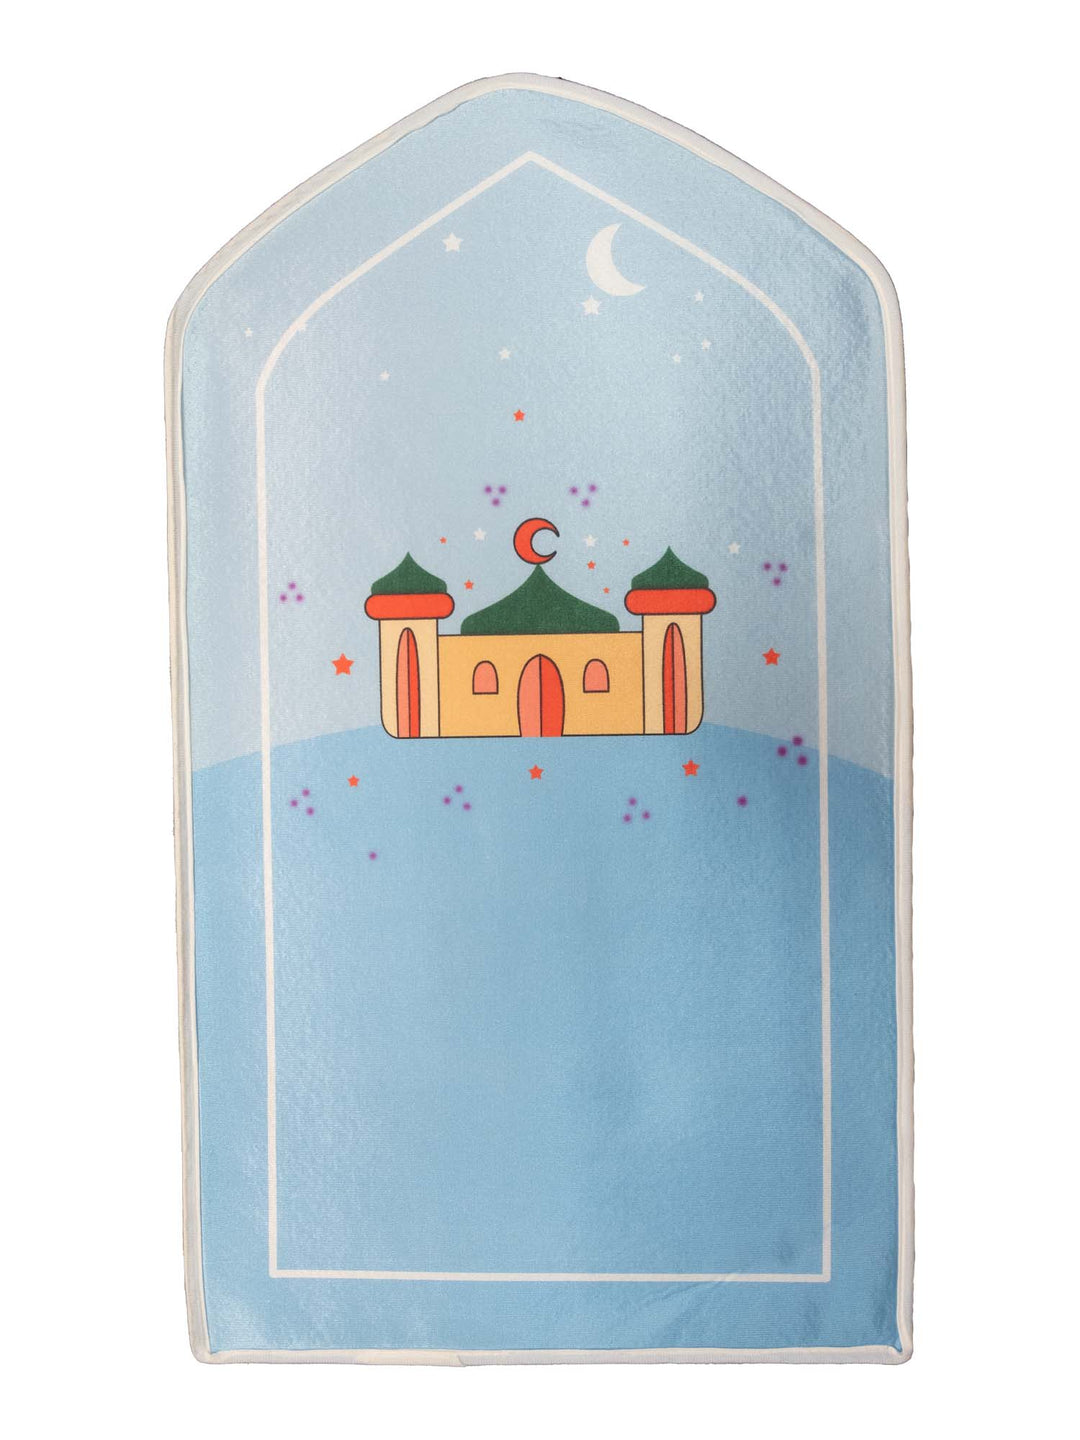 Children's Prayer Mat - Sponge - Masjid Design